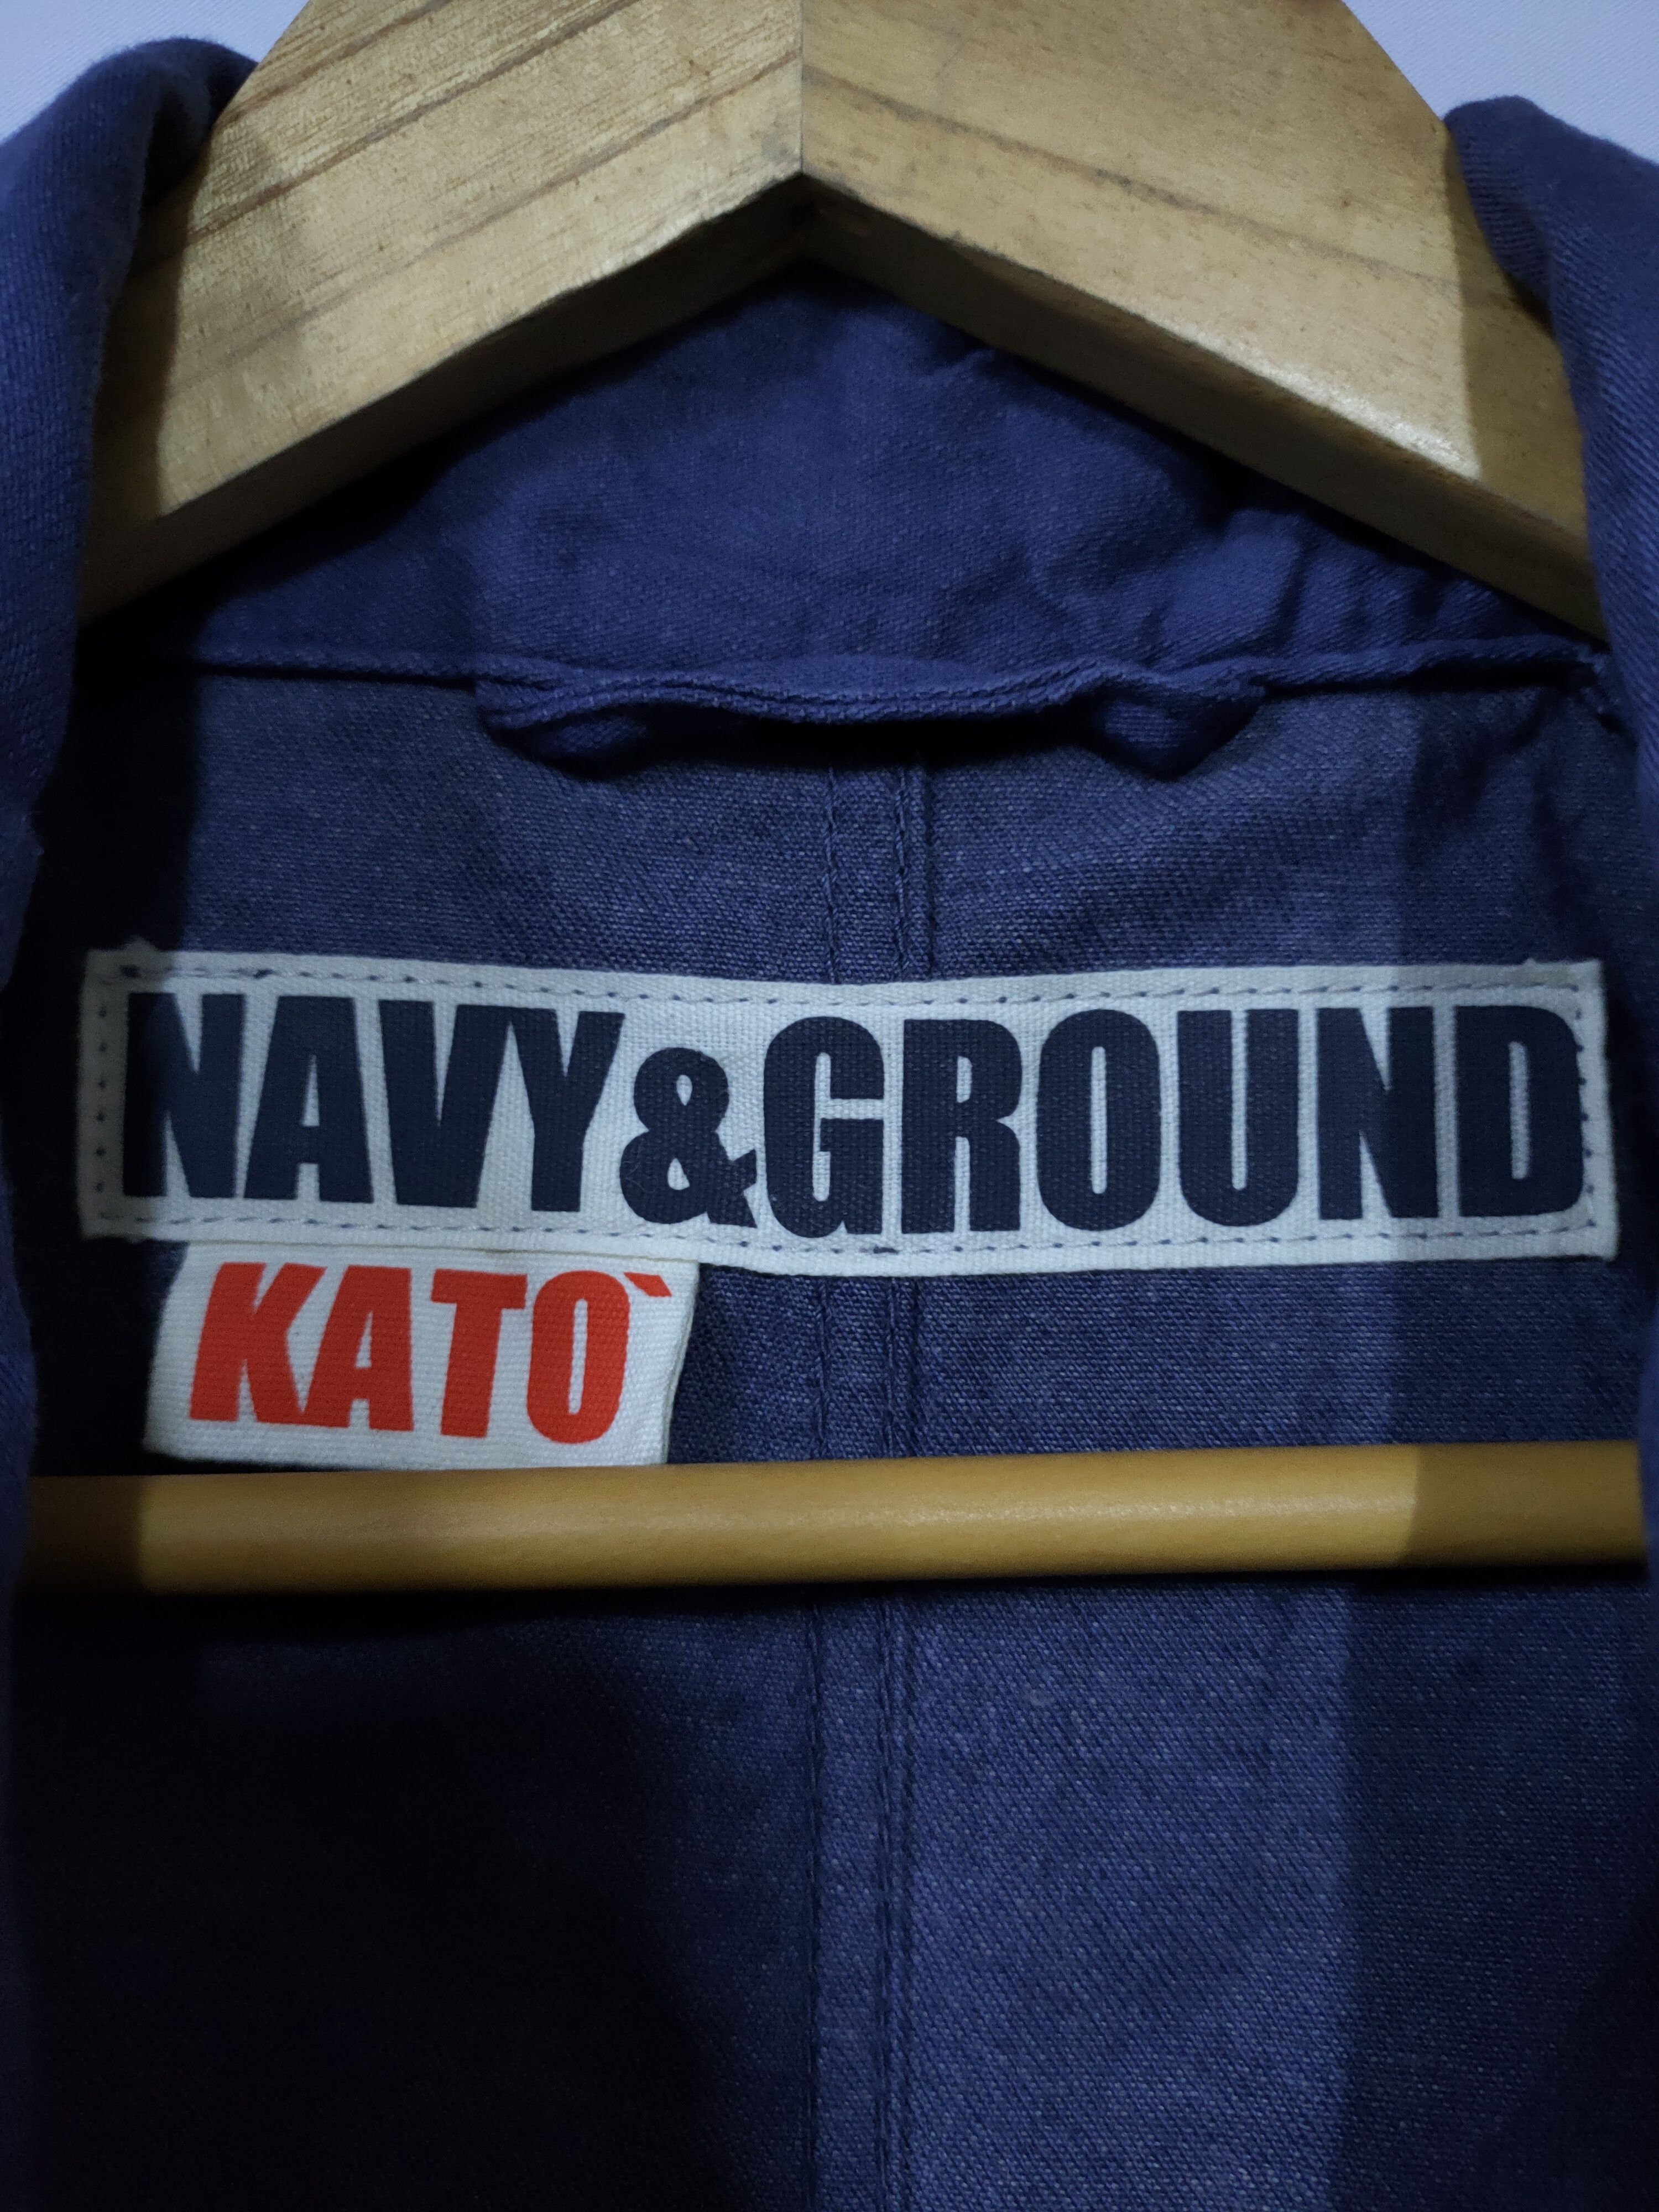 KATO NAVY & GROUND INDIGO BLUE LONG JACKET - 8